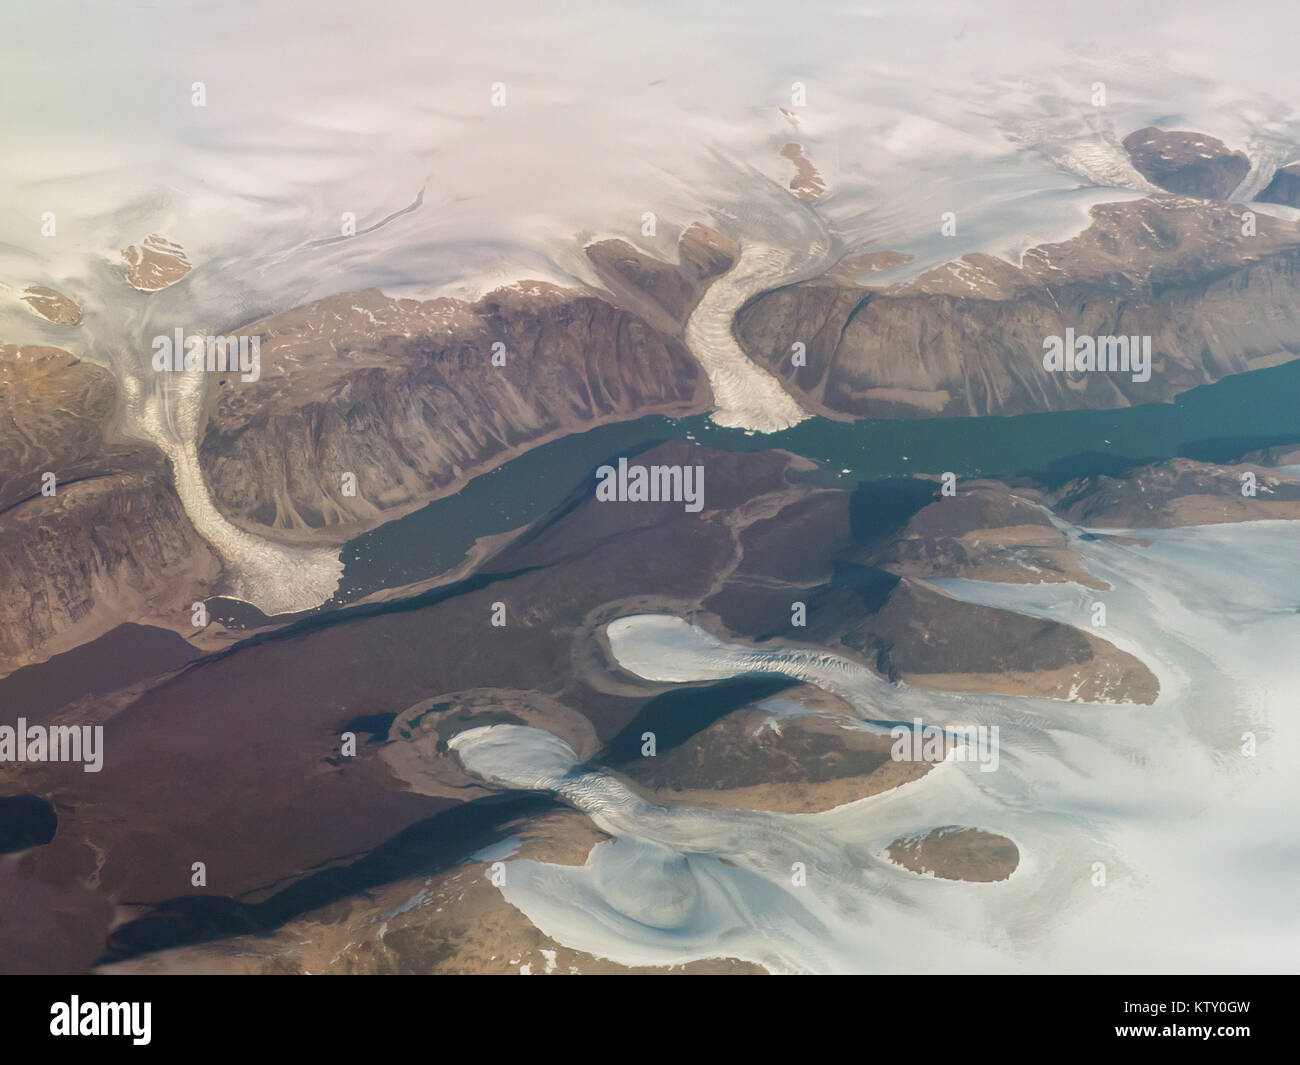 L'île de Baffin (Nunavut), le Canada : une vue aérienne des glaciers près de Pond Inlet. Banque D'Images